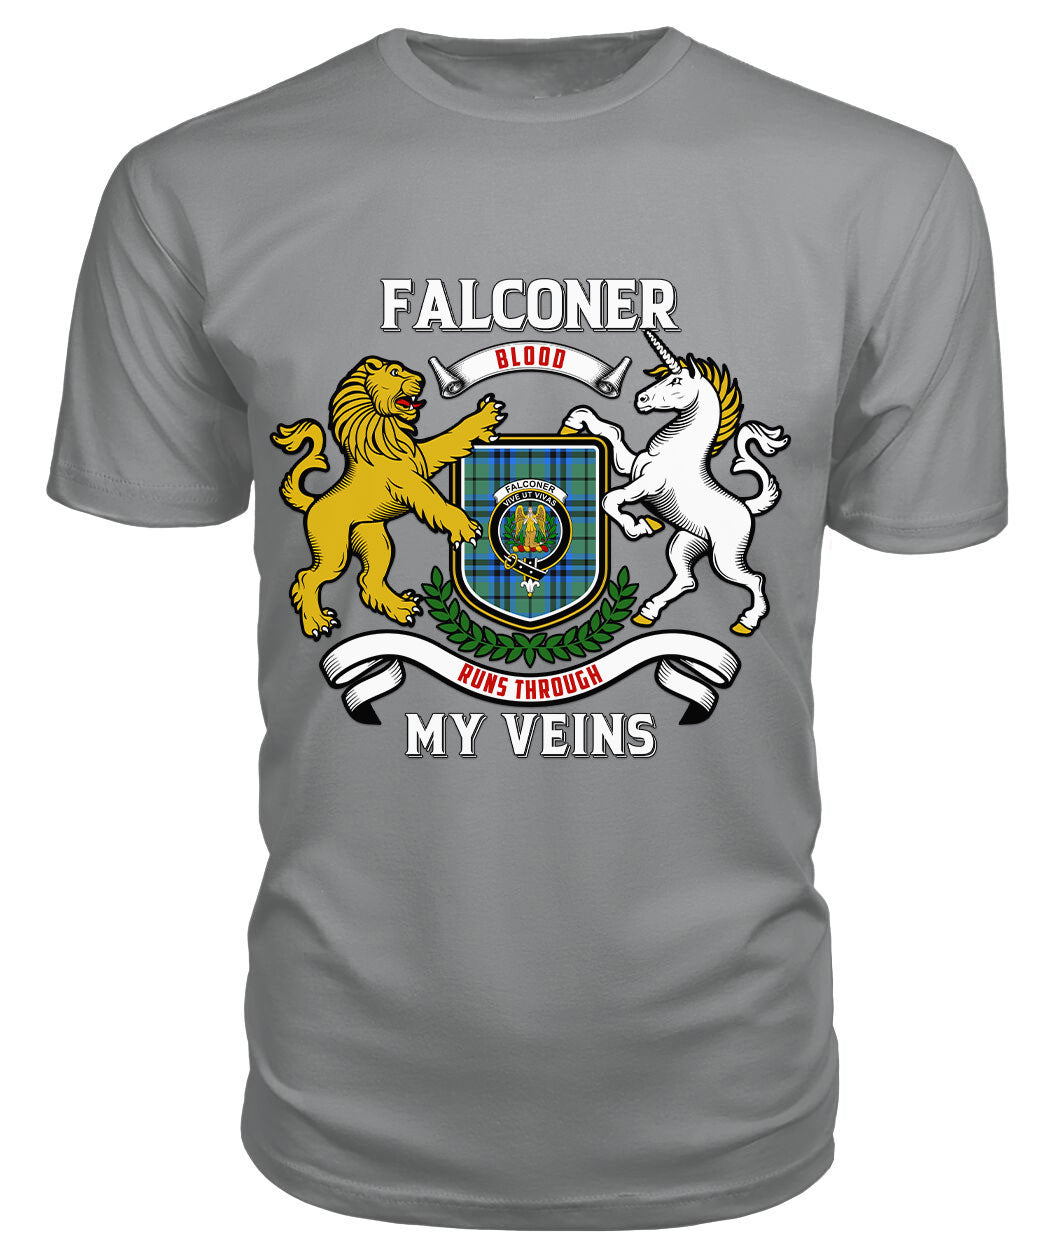 Falconer Tartan Crest 2D T-shirt - Blood Runs Through My Veins Style